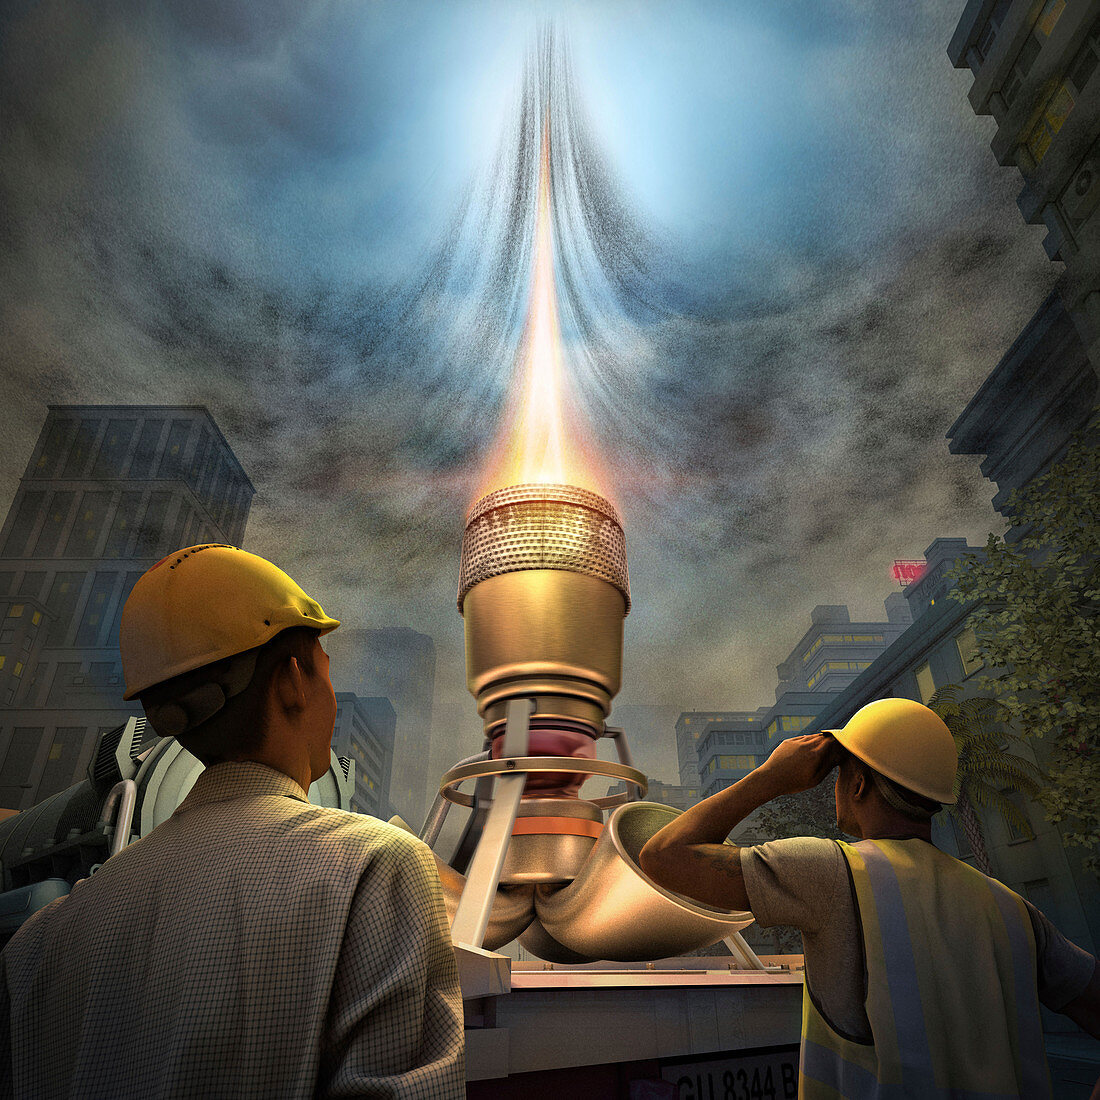 Jet engine 'chimney' to reduce smog, illustration